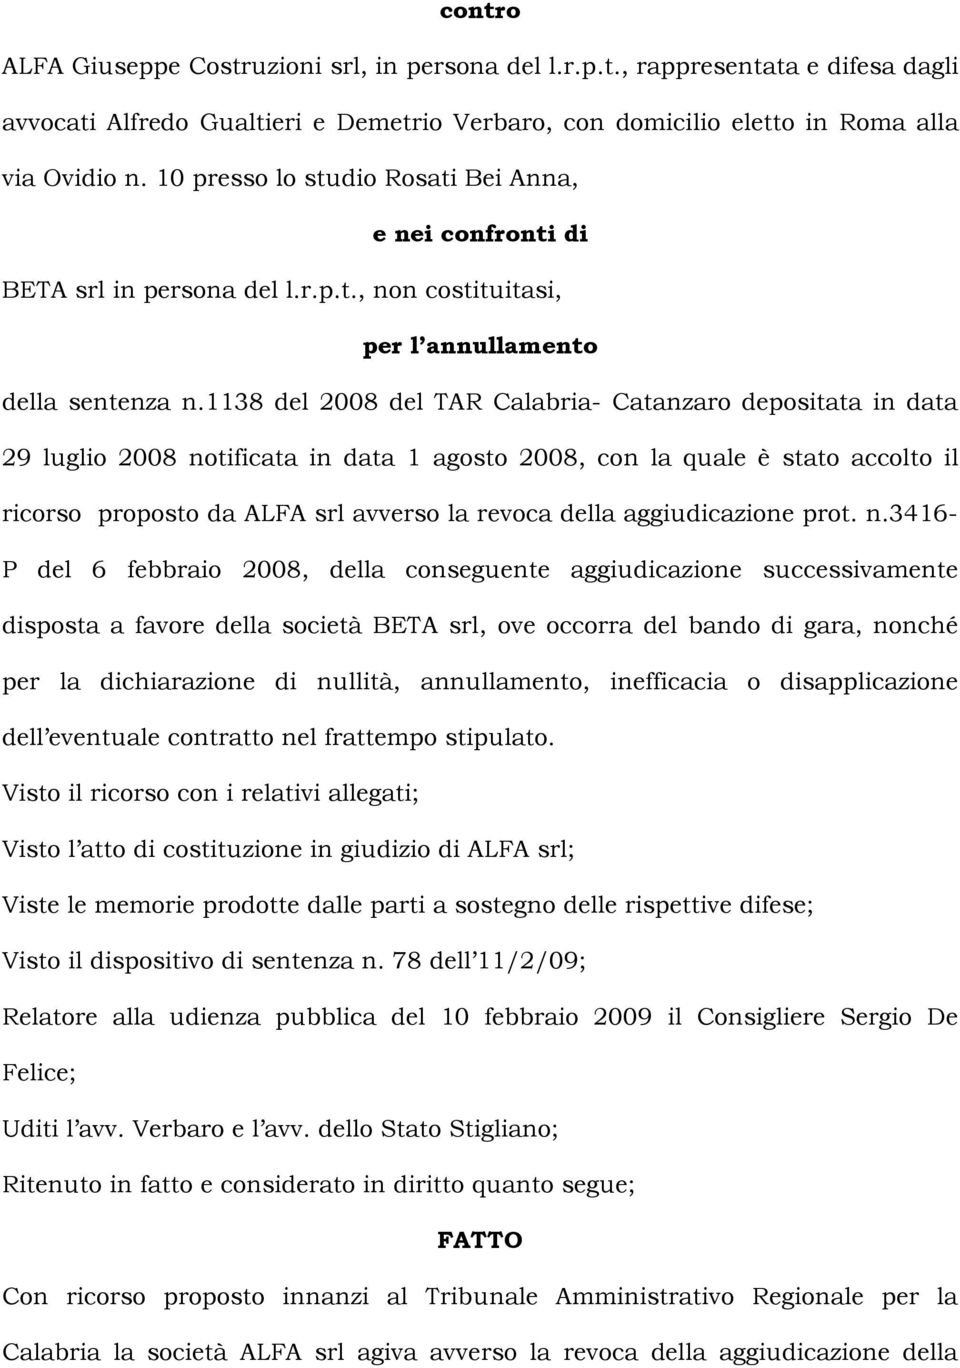 1138 del 2008 del TAR Calabria- Catanzaro depositata in data 29 luglio 2008 notificata in data 1 agosto 2008, con la quale è stato accolto il ricorso proposto da ALFA srl avverso la revoca della